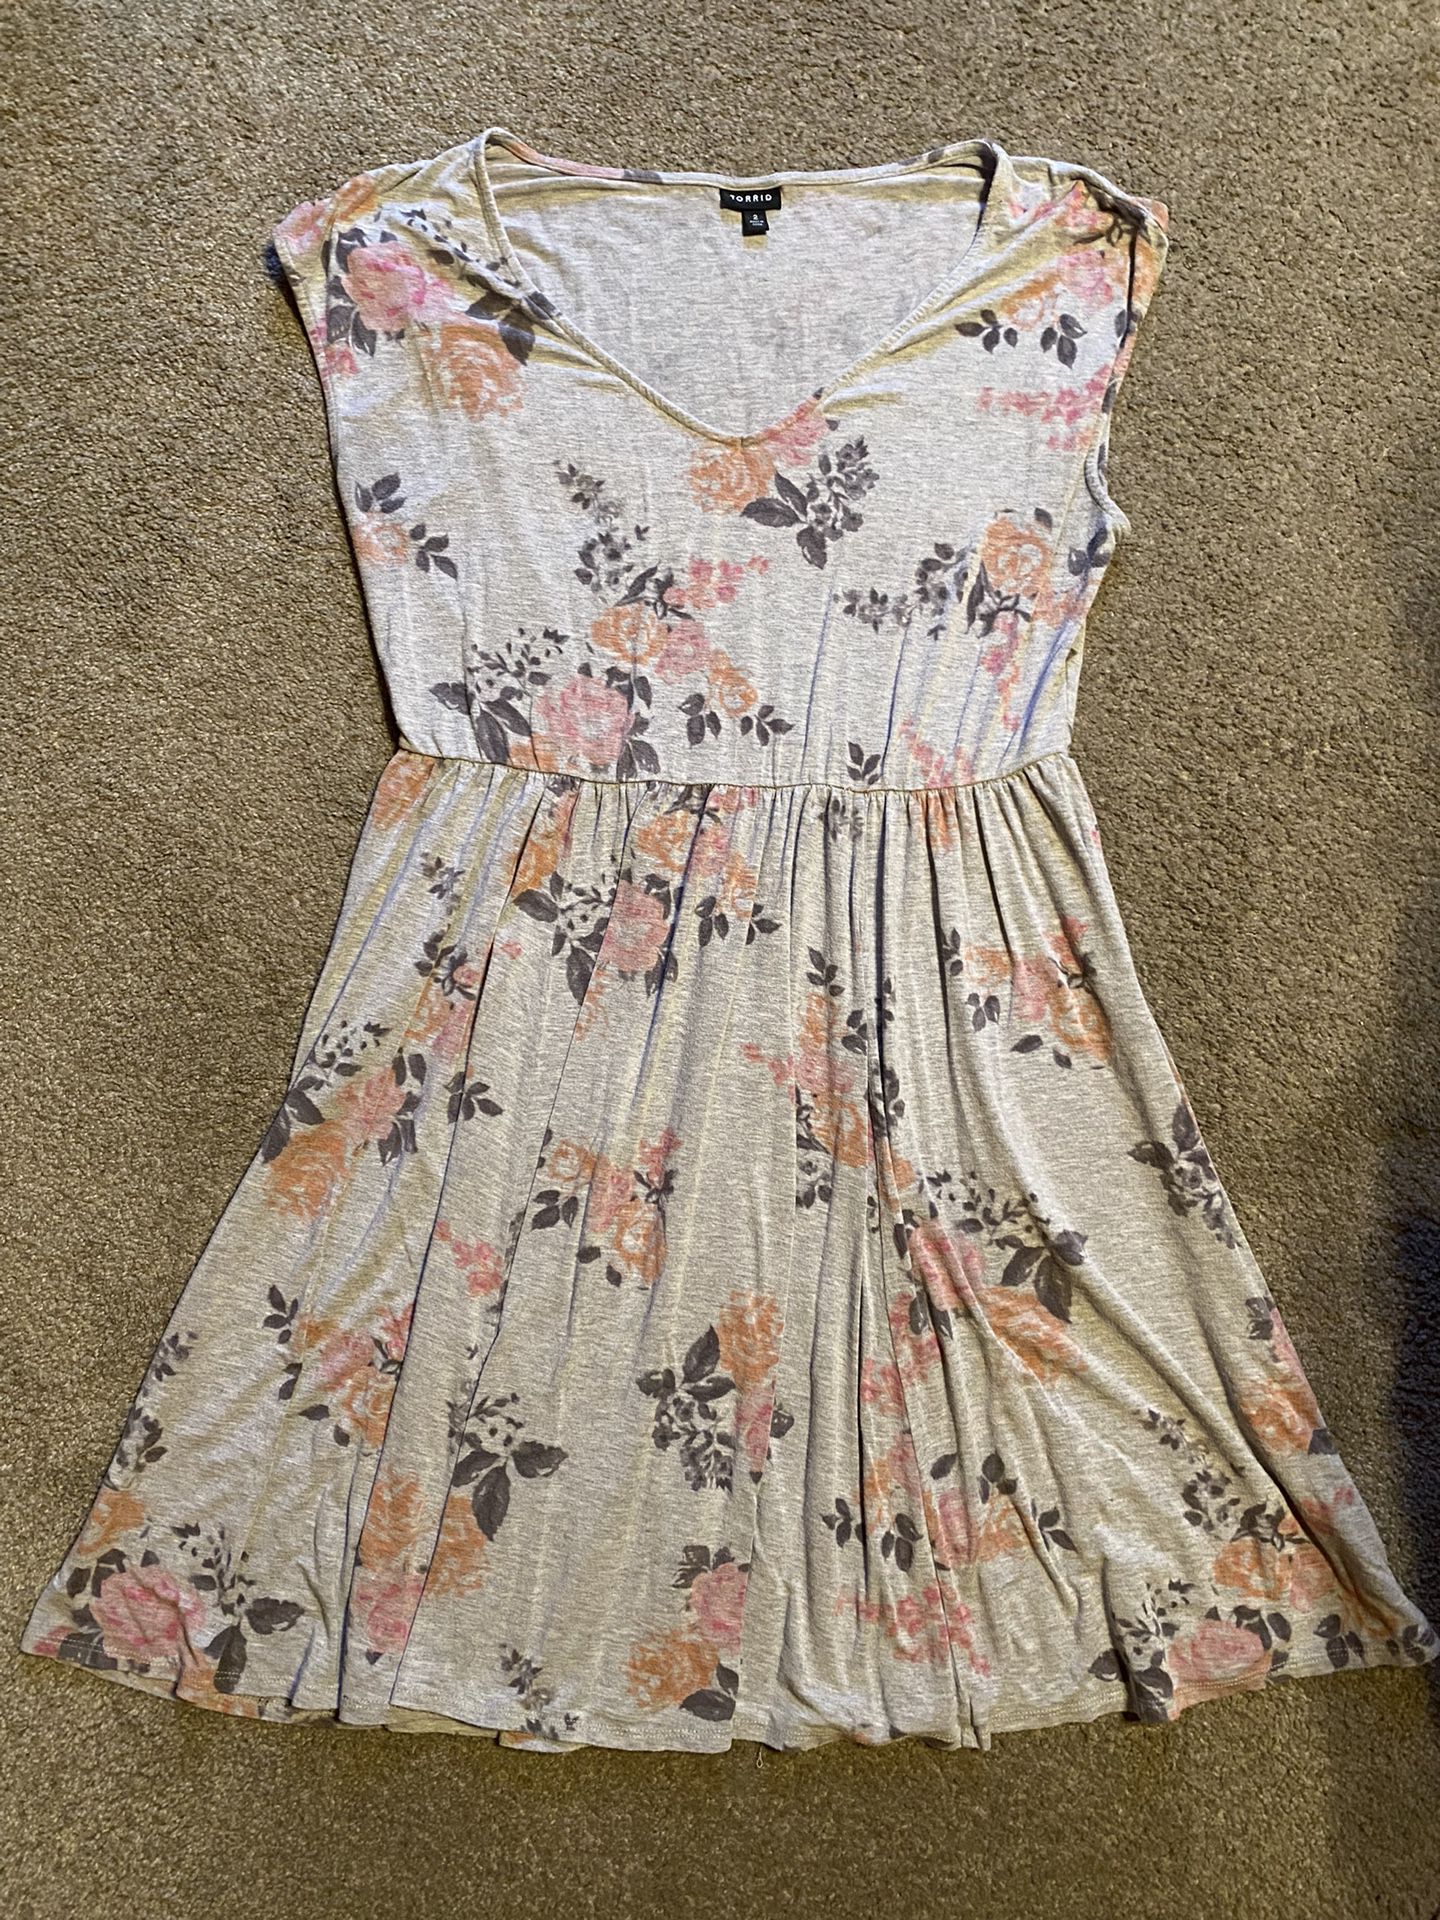 Torrid Floral Short Dress Plus Size 2XL